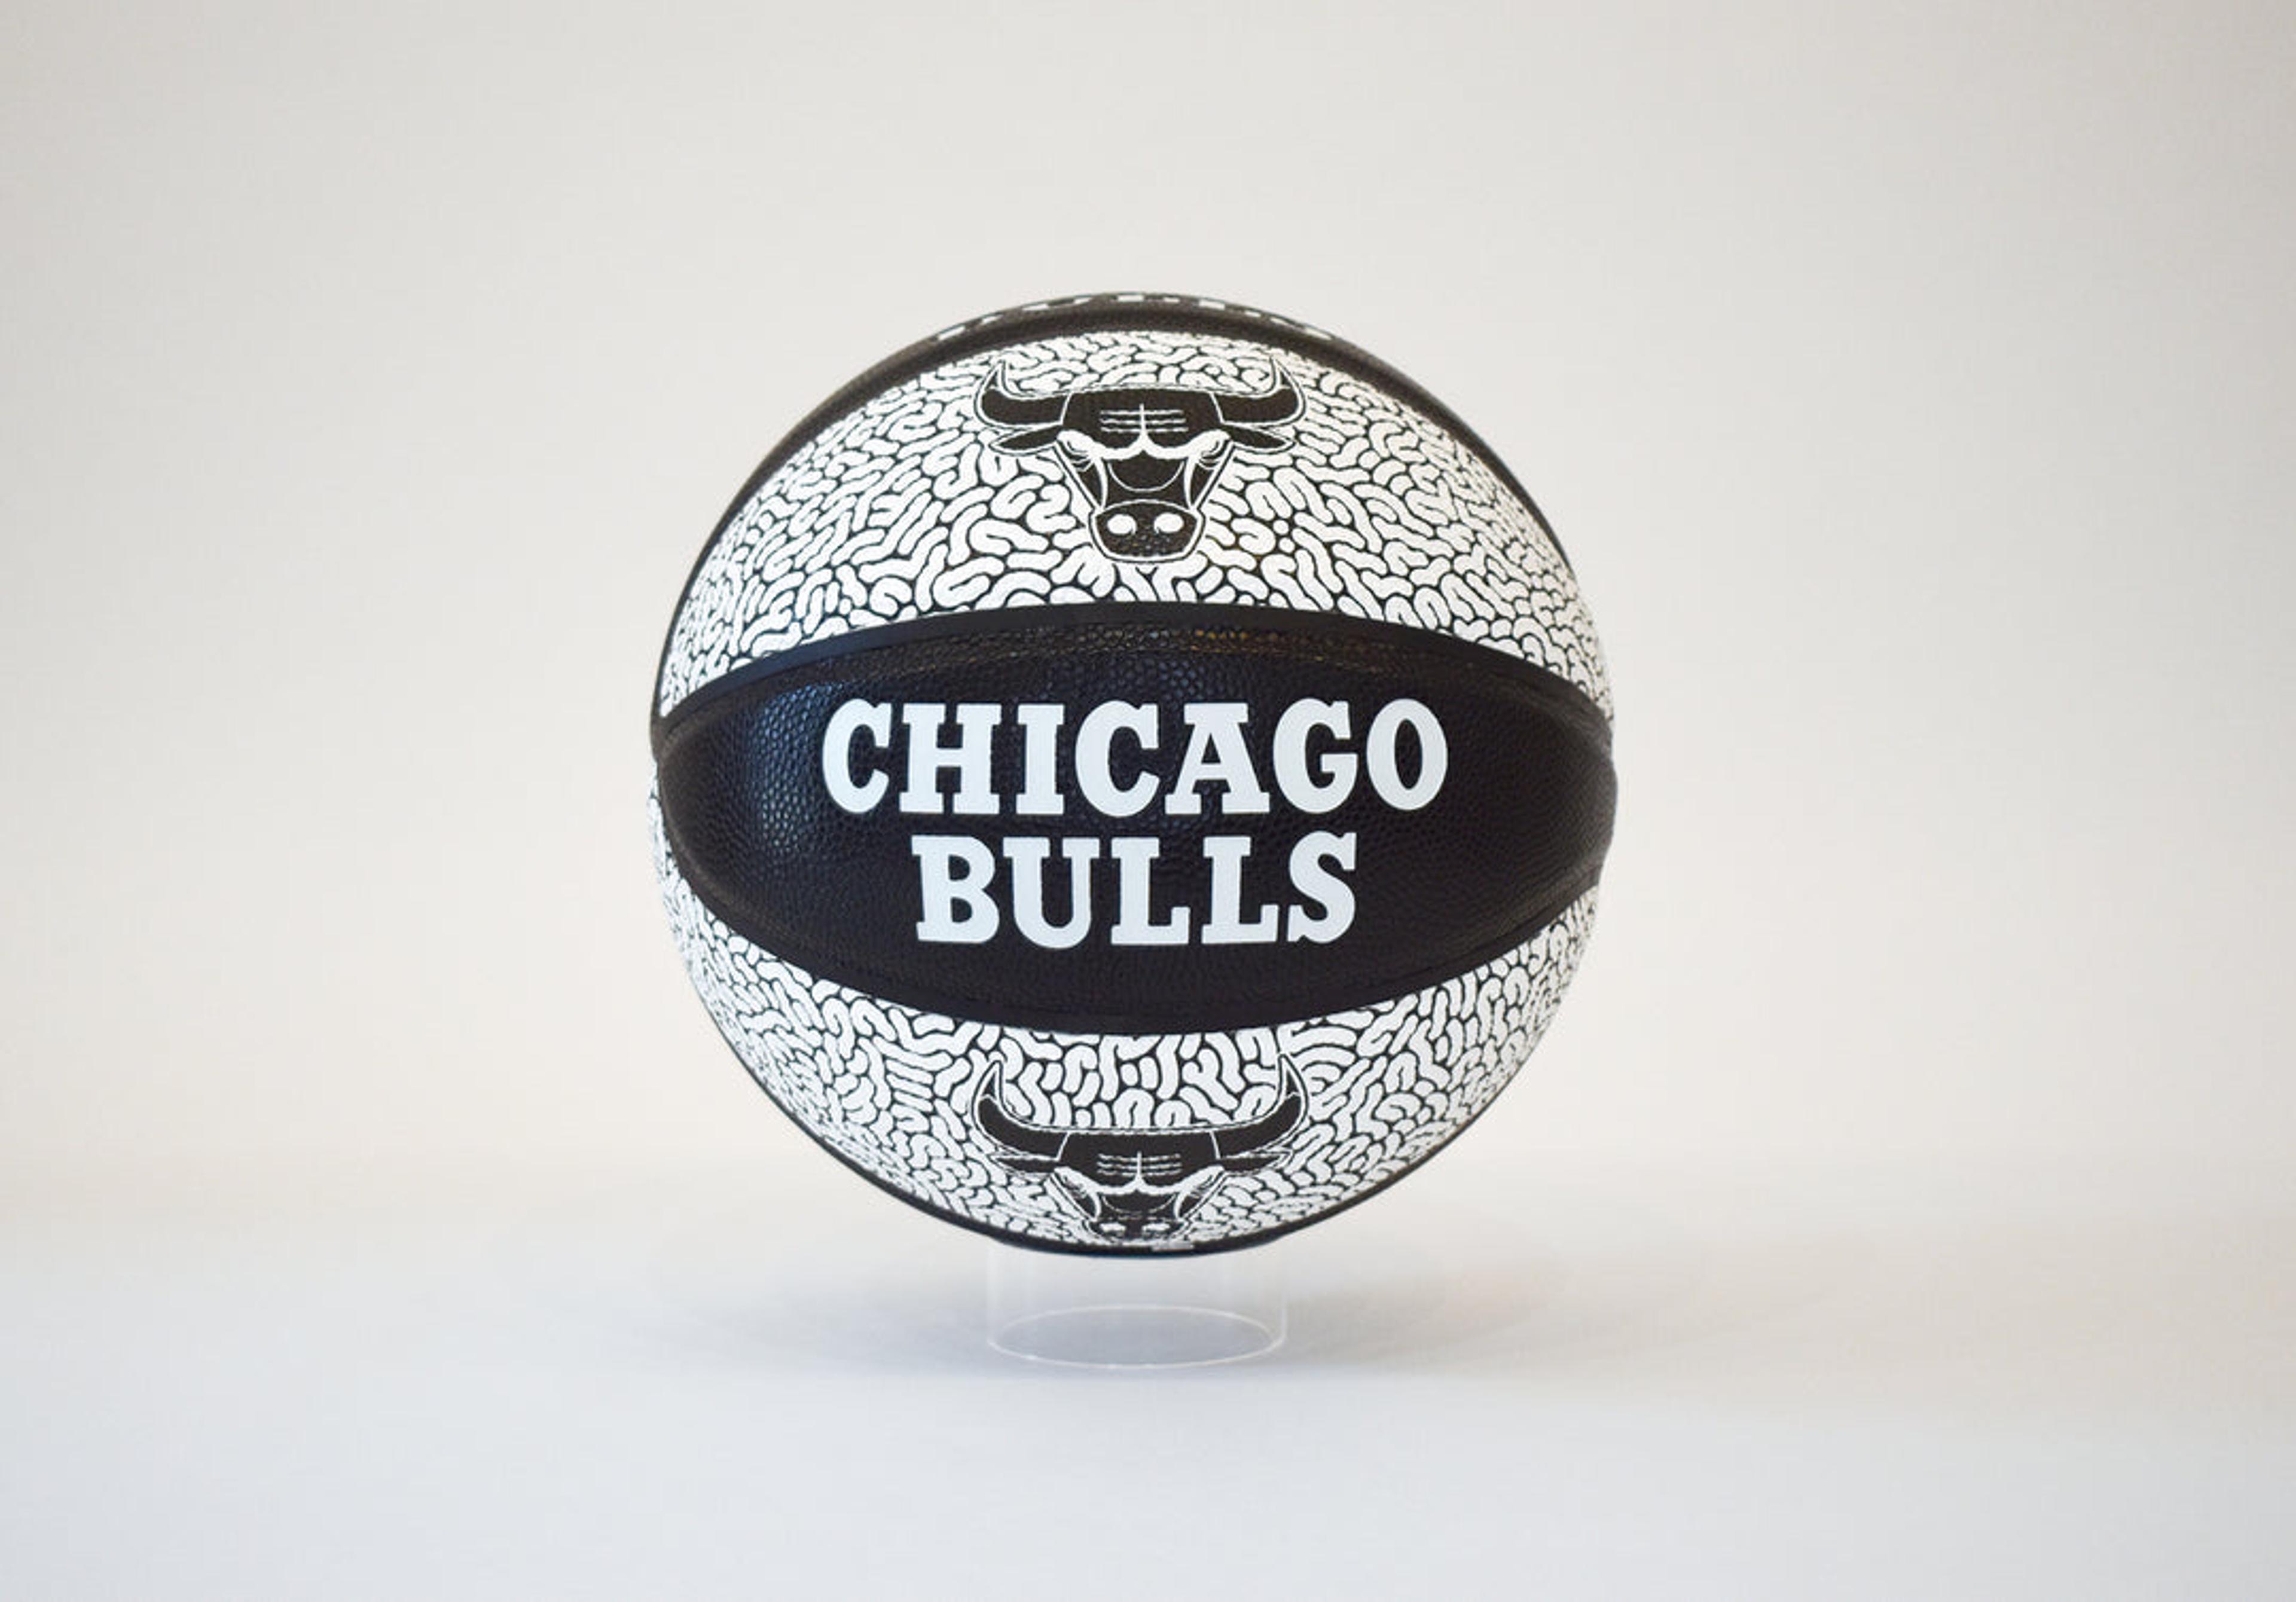 Black & White Chicago Bulls Basketball